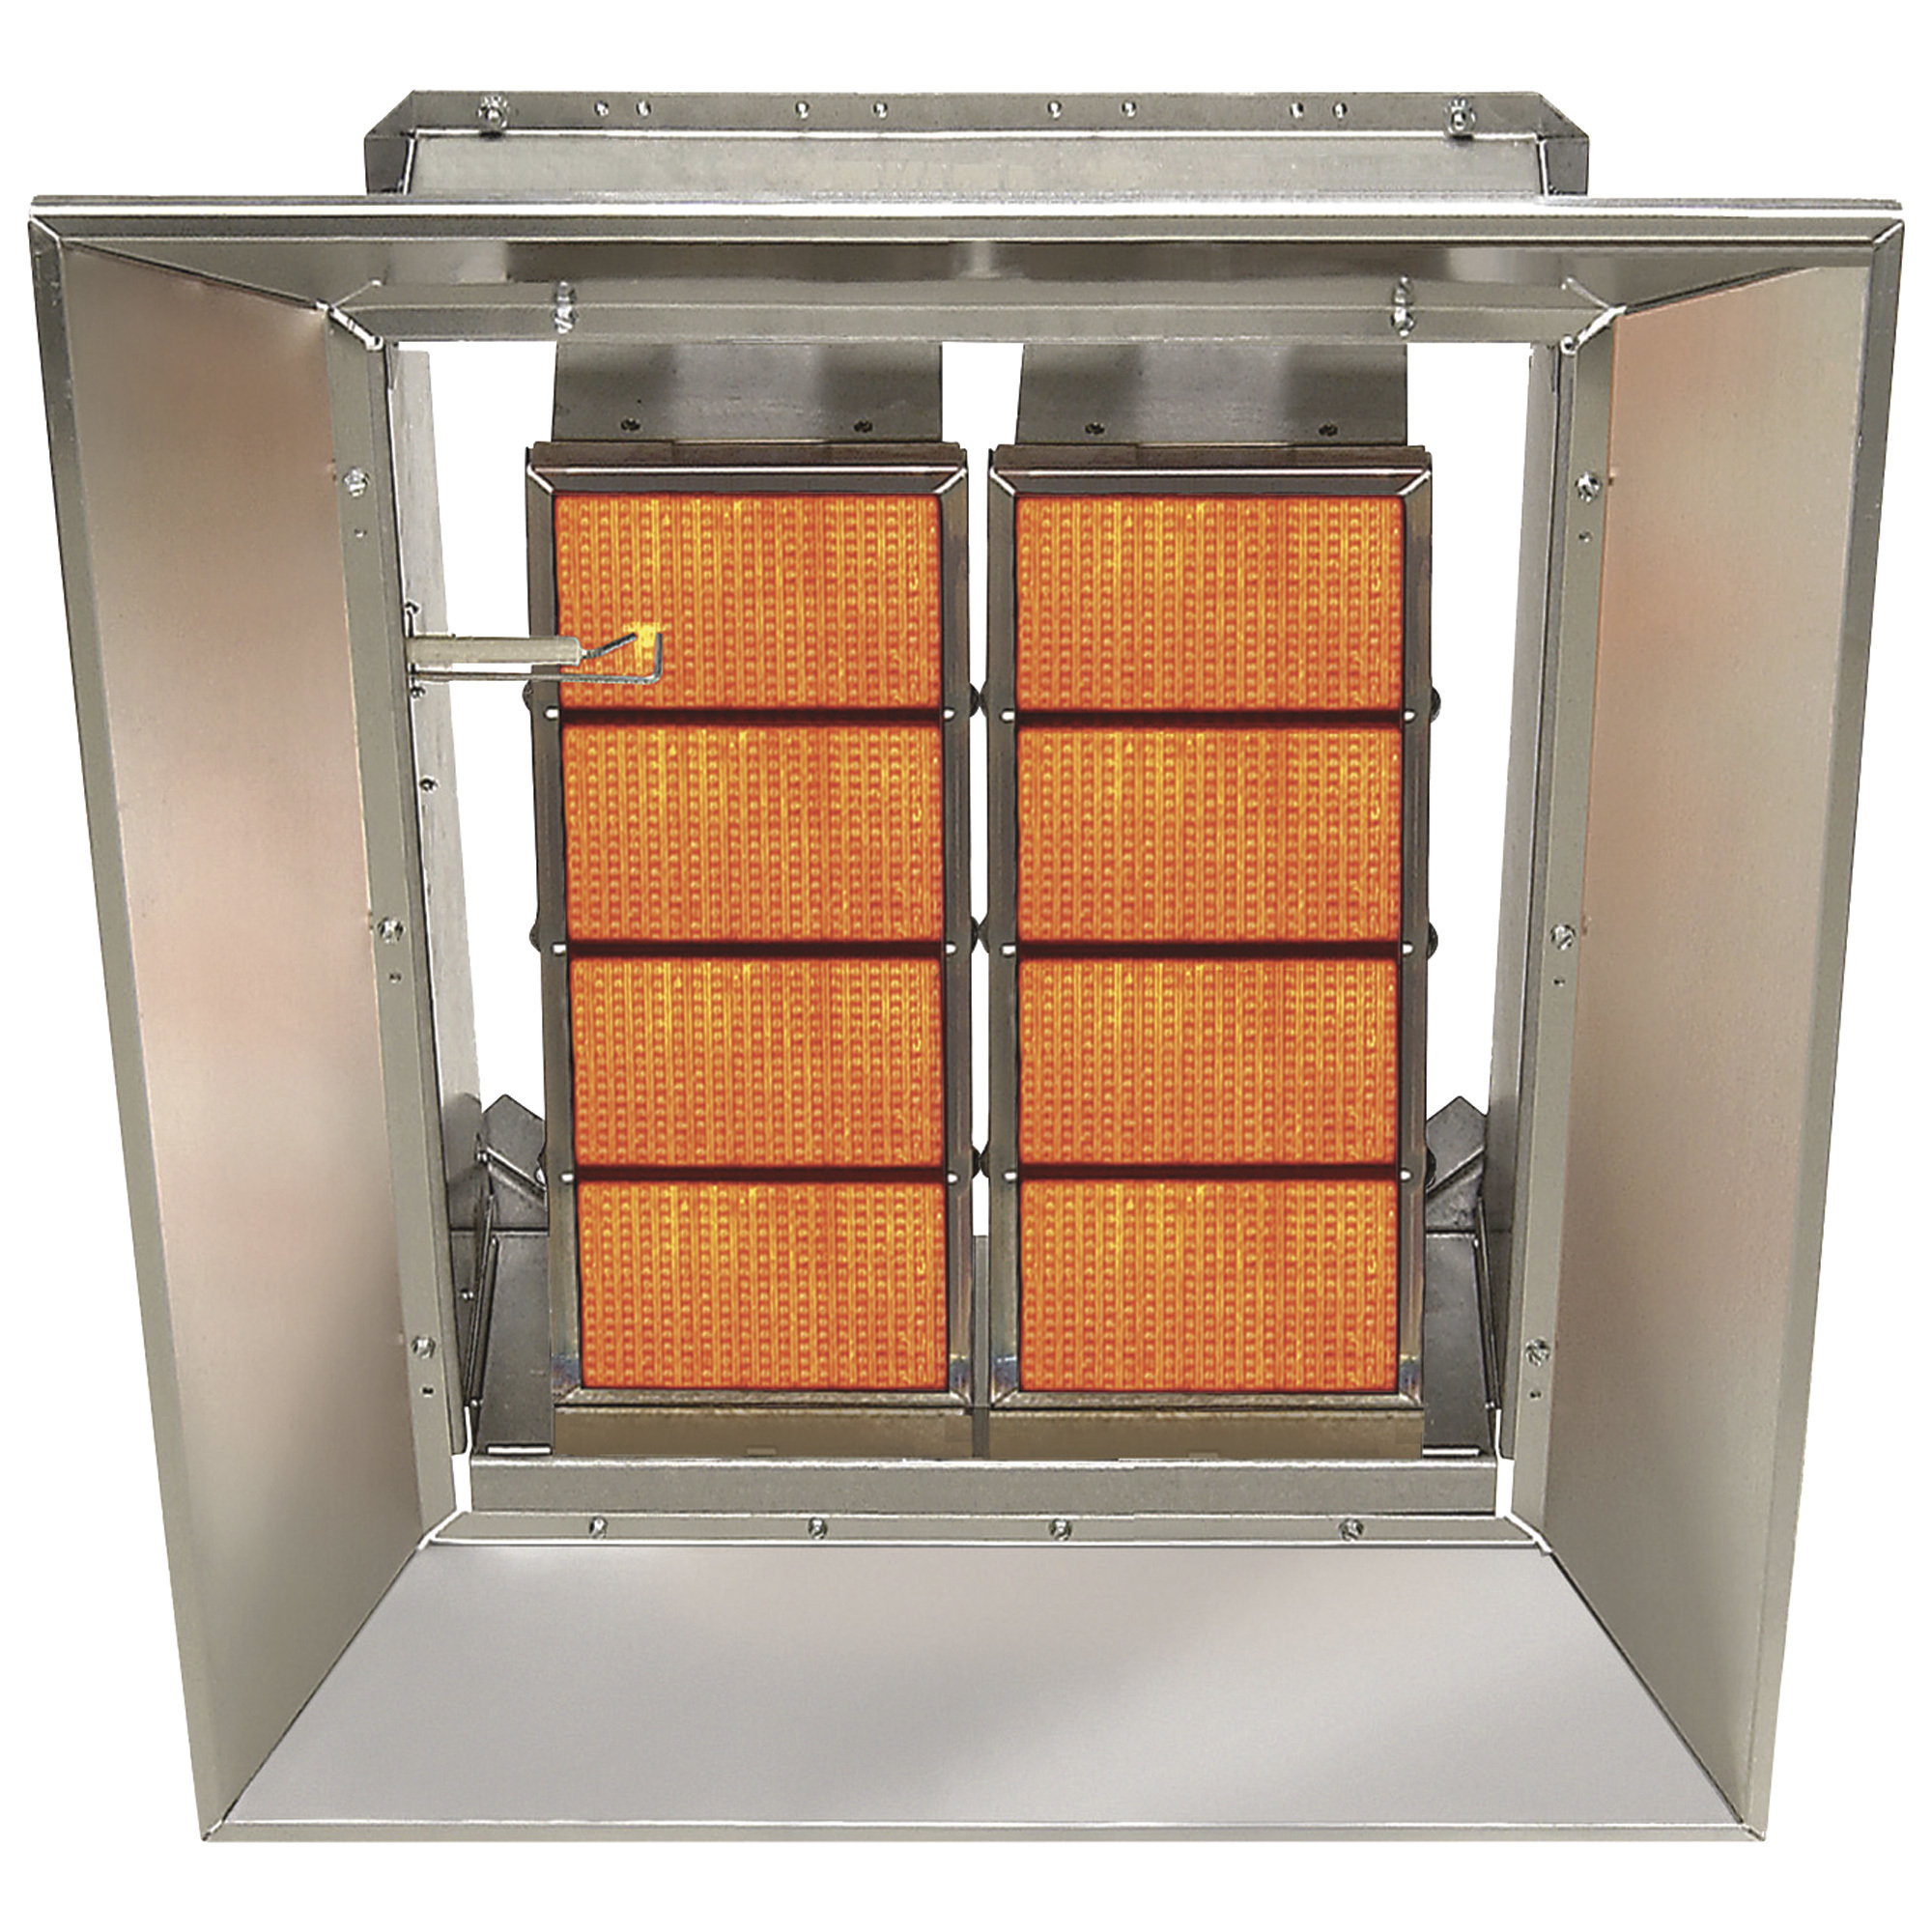 SunStar Heating Products Infrared Ceramic Heater, Propane, 65,000 BTU, Model SG6-L